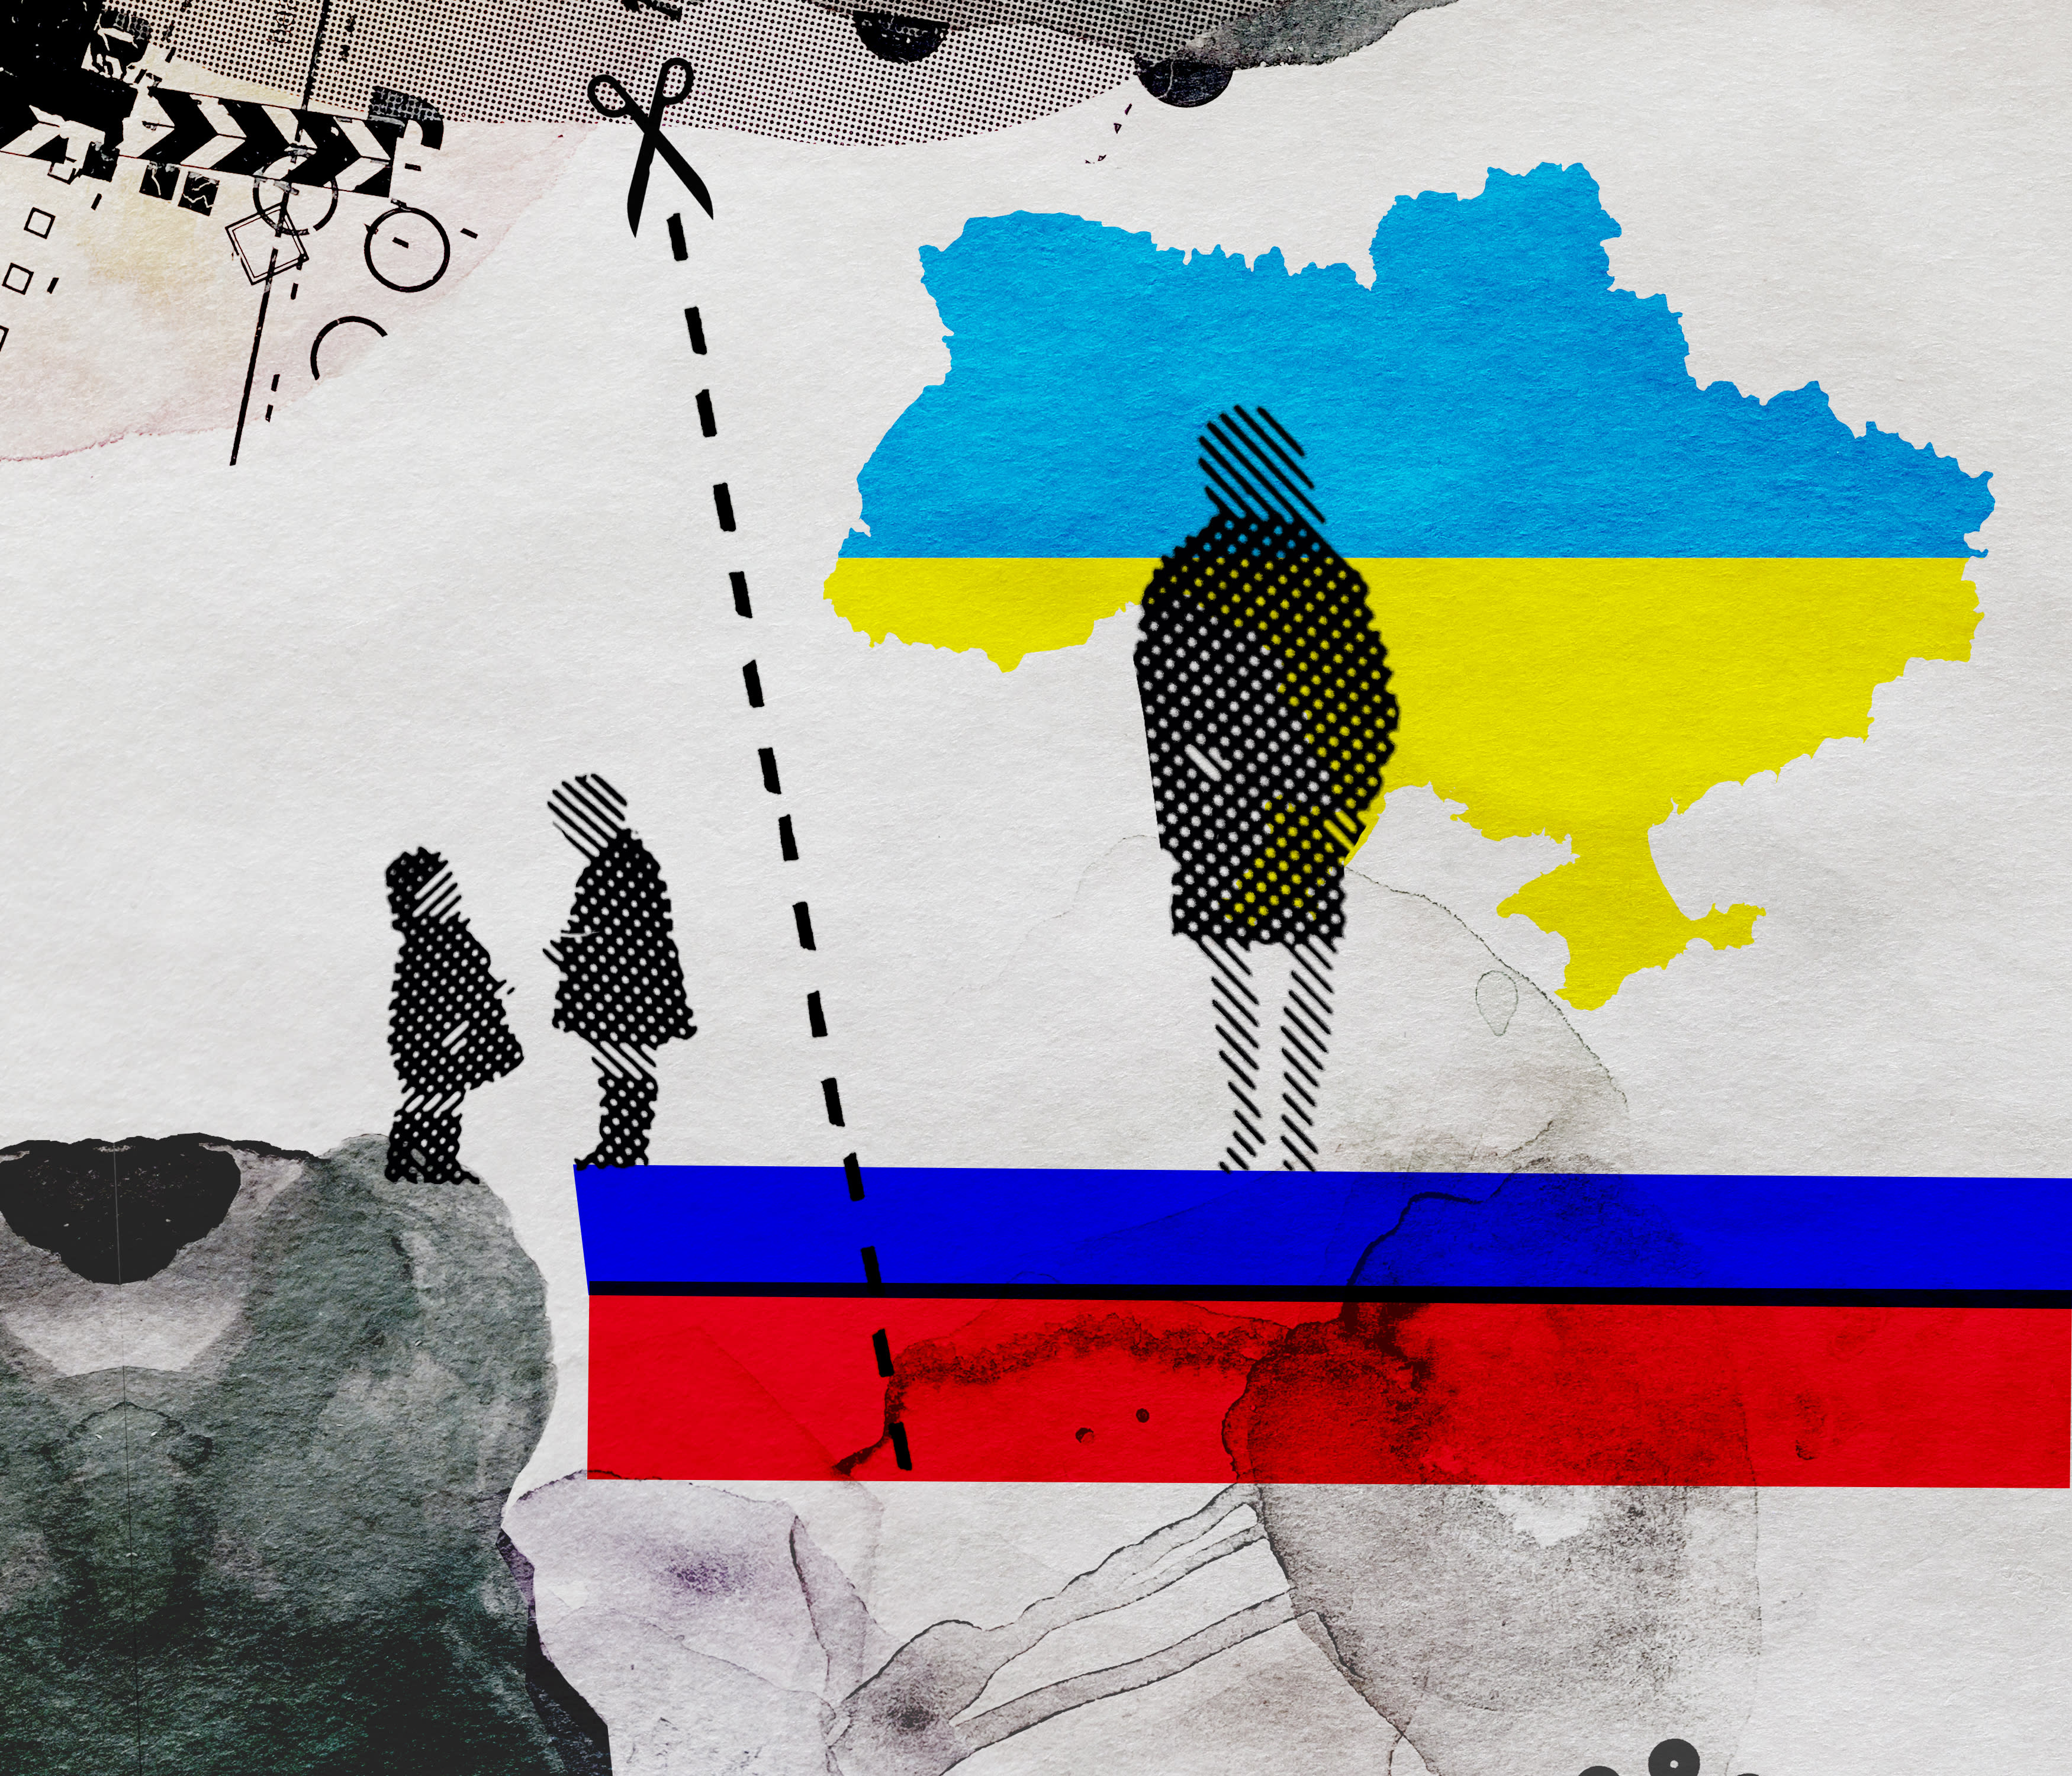 Finnische Kinderämter nehmen ukrainische Kinder in Gewahrsam, während die Mutter einkaufen geht, Russland führt einen Fall in antiwestlicher Propaganda an